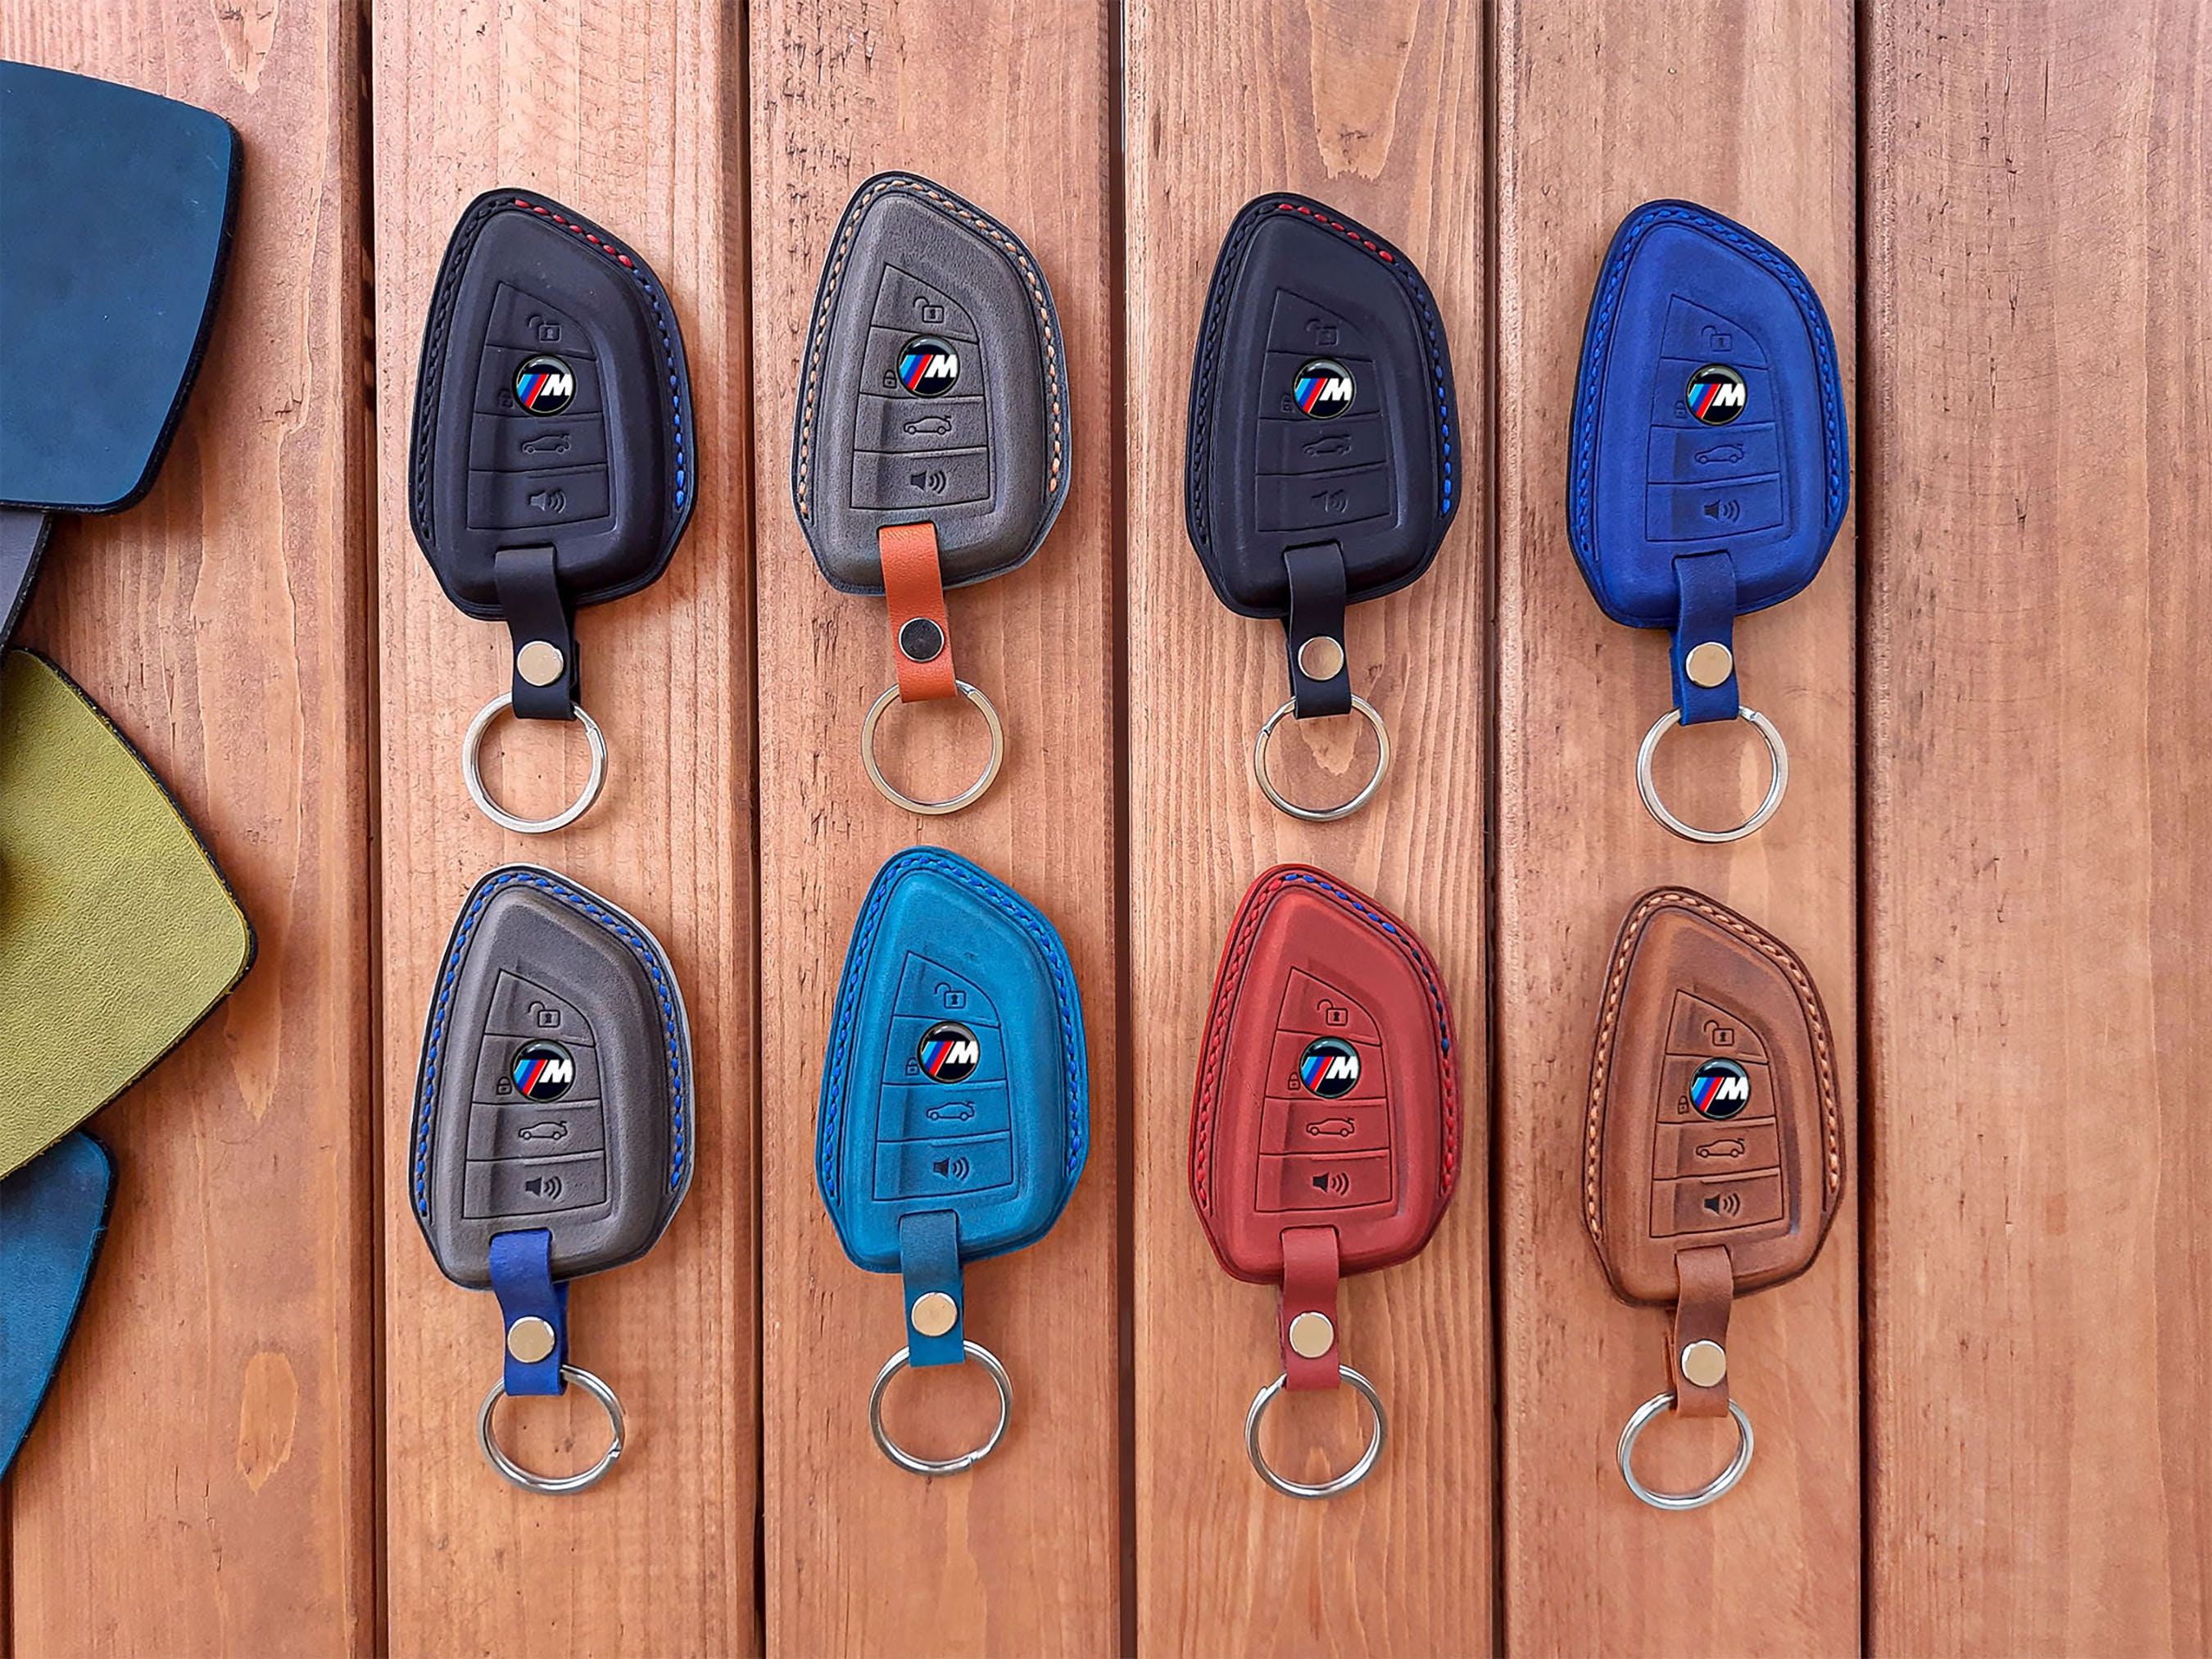 Bmw leather key case - .de